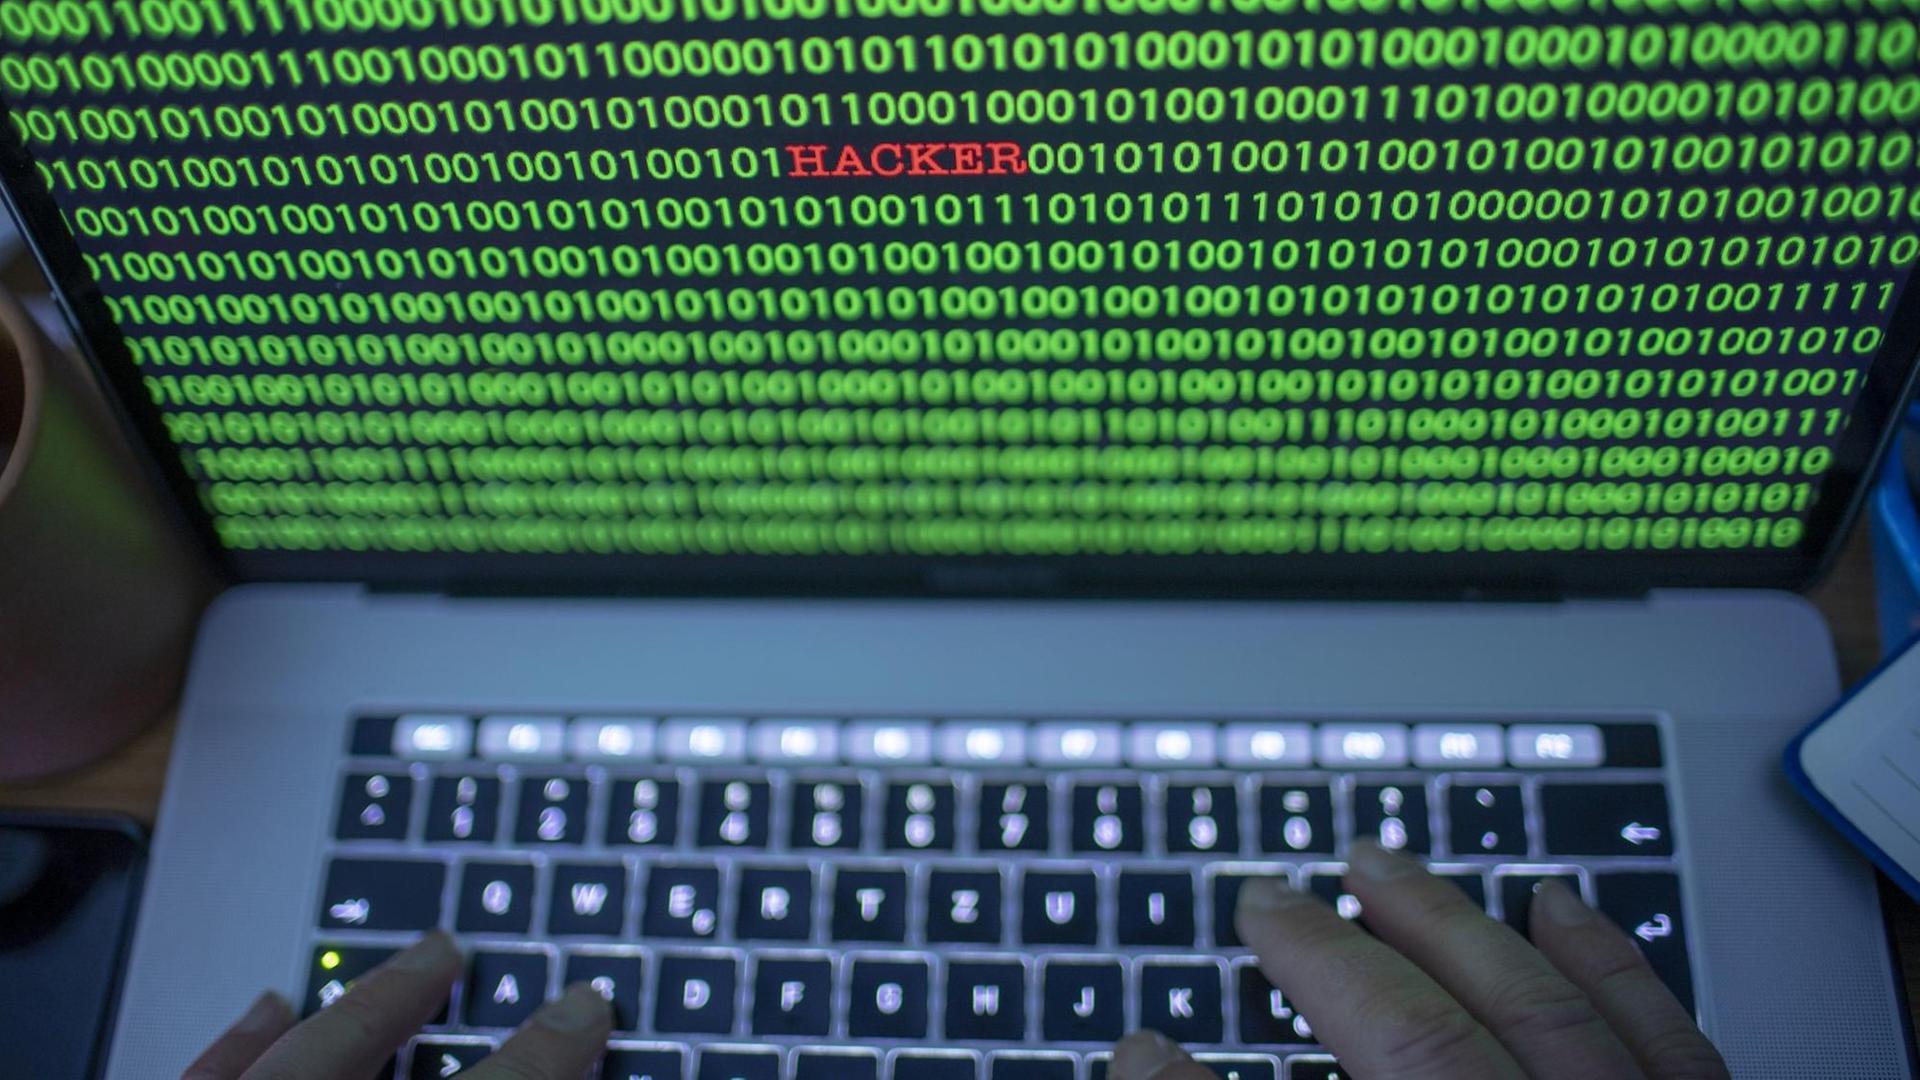 Zwischen dem Binärcode auf einem Laptopmonitor ist der Schriftzug "Hacker" zu sehen